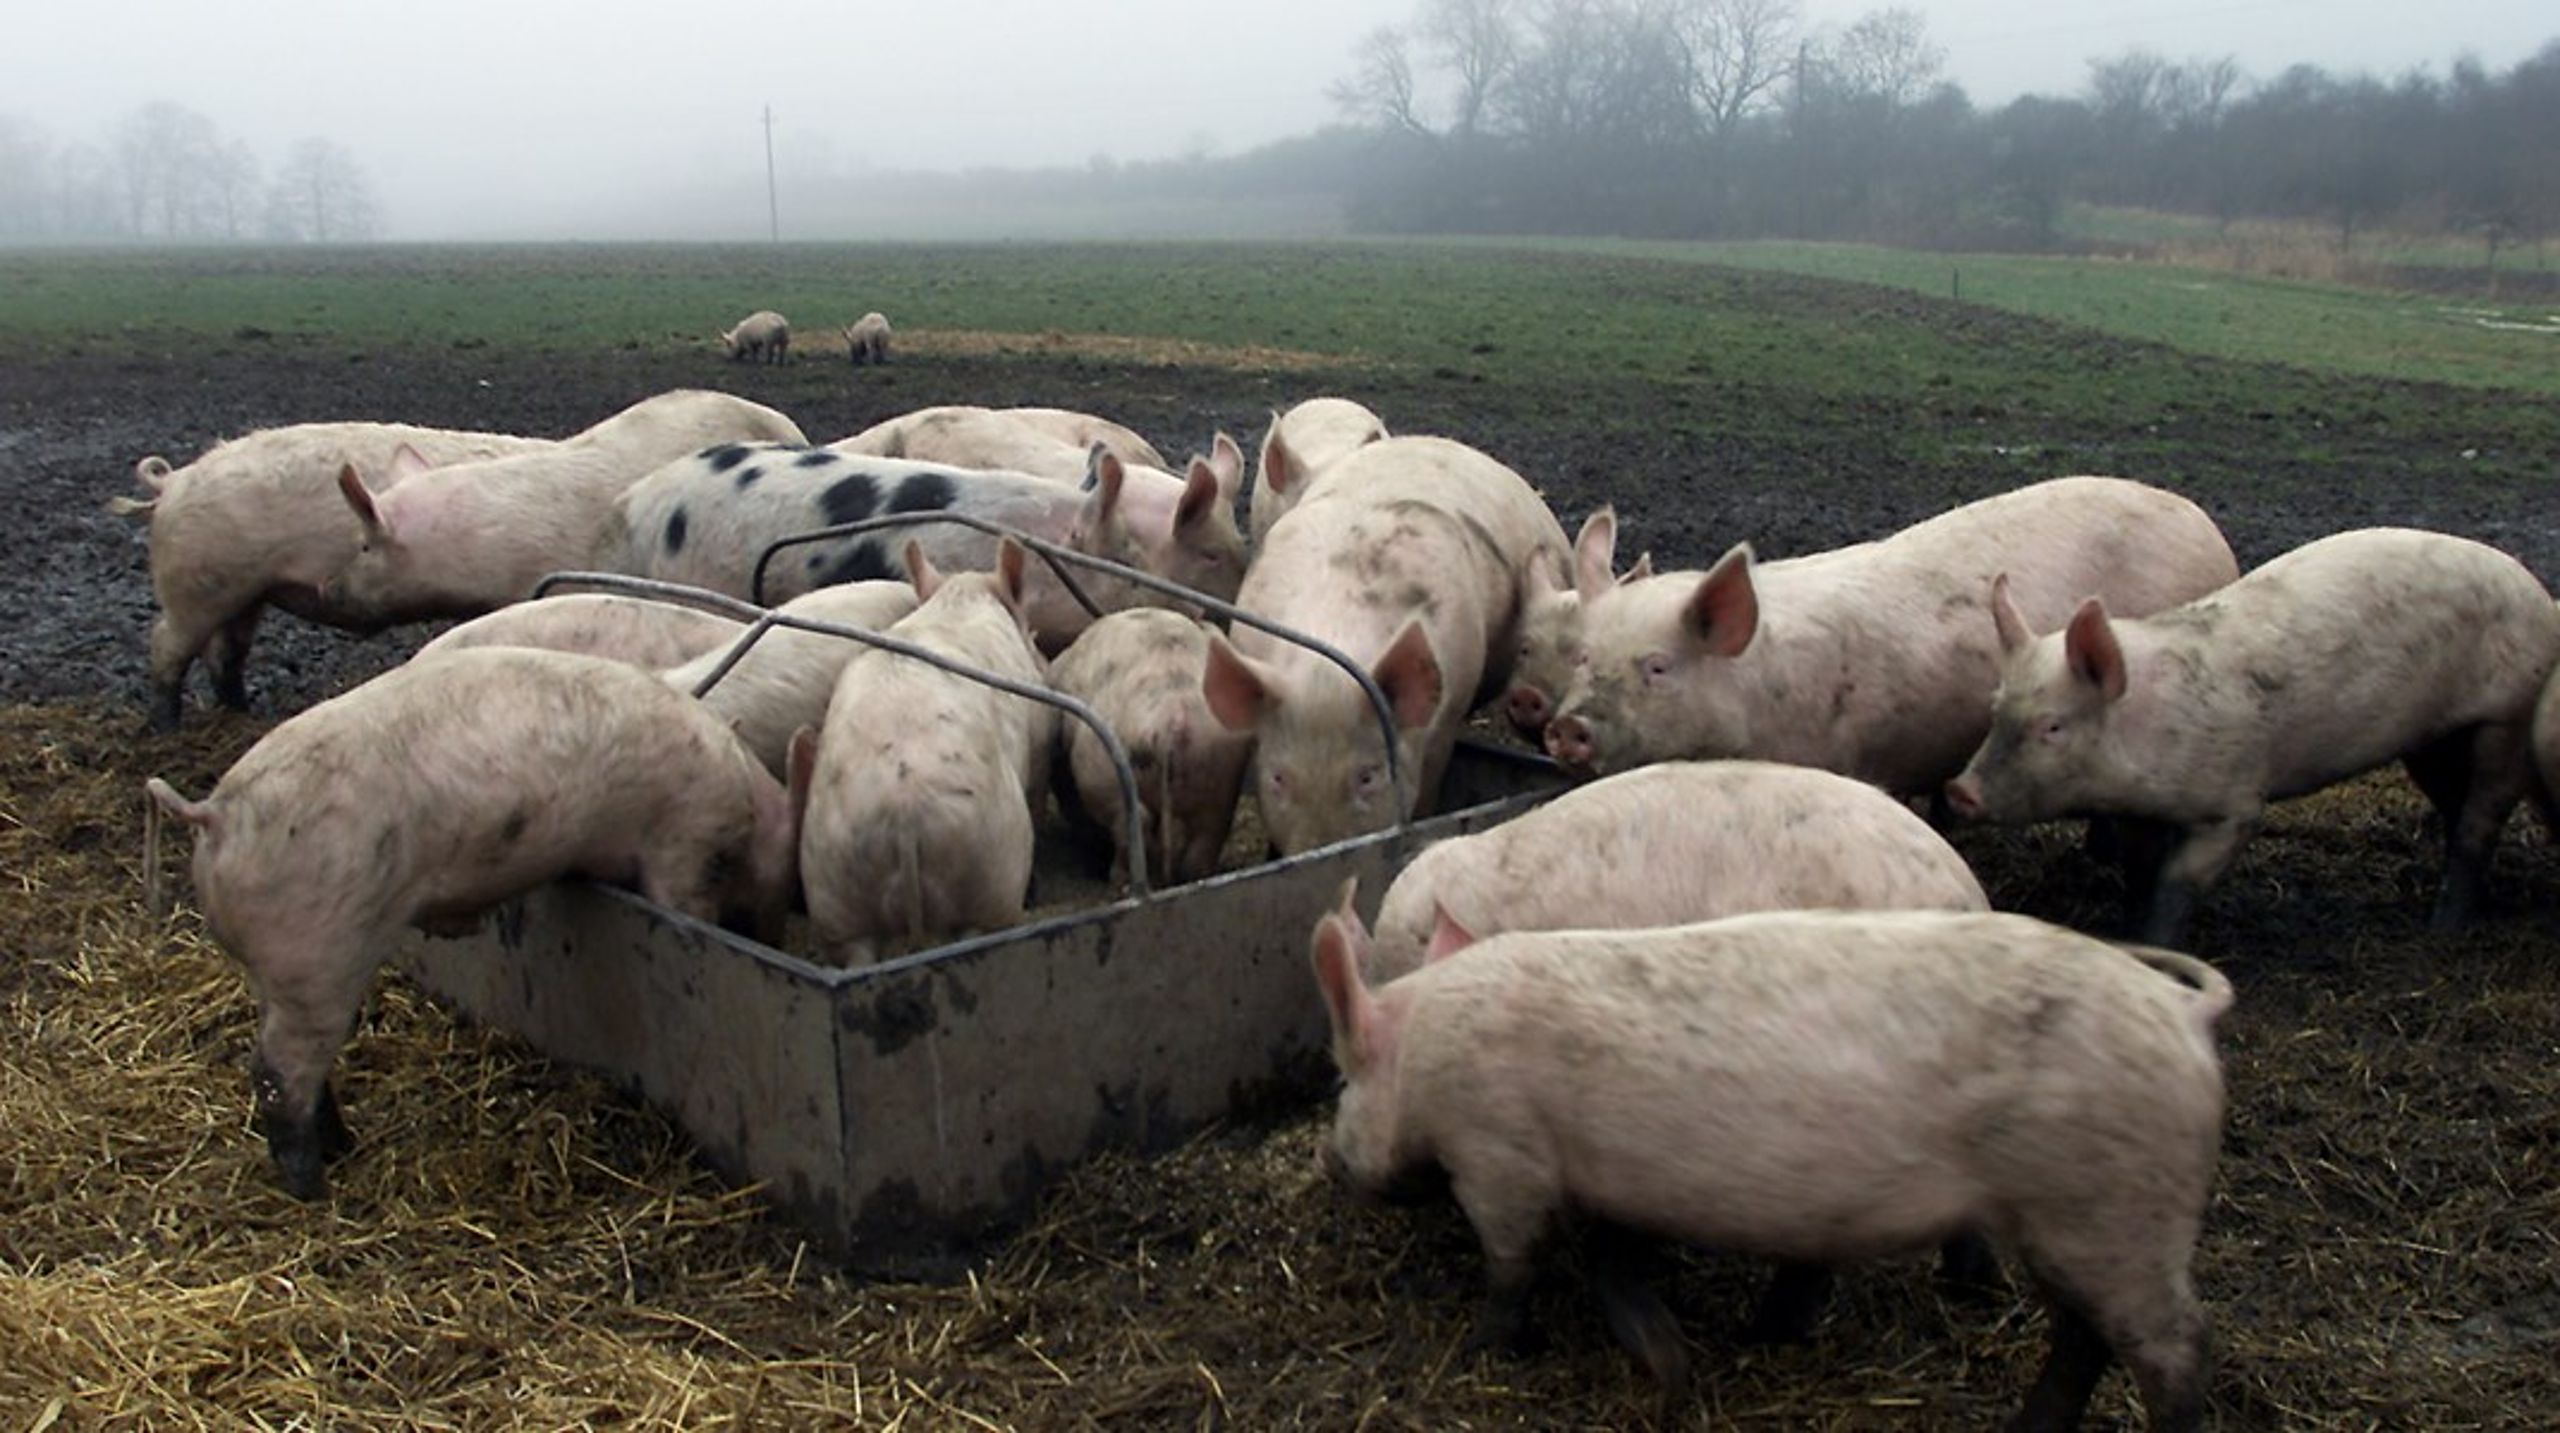 Fødevareforbundet NNF har&nbsp; bakket op om midler til Åbent Landbrug, hvor landmænd i hele Danmark&nbsp;inviterer danskere inden for. Er det kødpromovering, hvis landmanden har grise, eller er det sundt for os alle at se, hvor maden egentlig kommer fra, skriver Søren Sand Kirk.